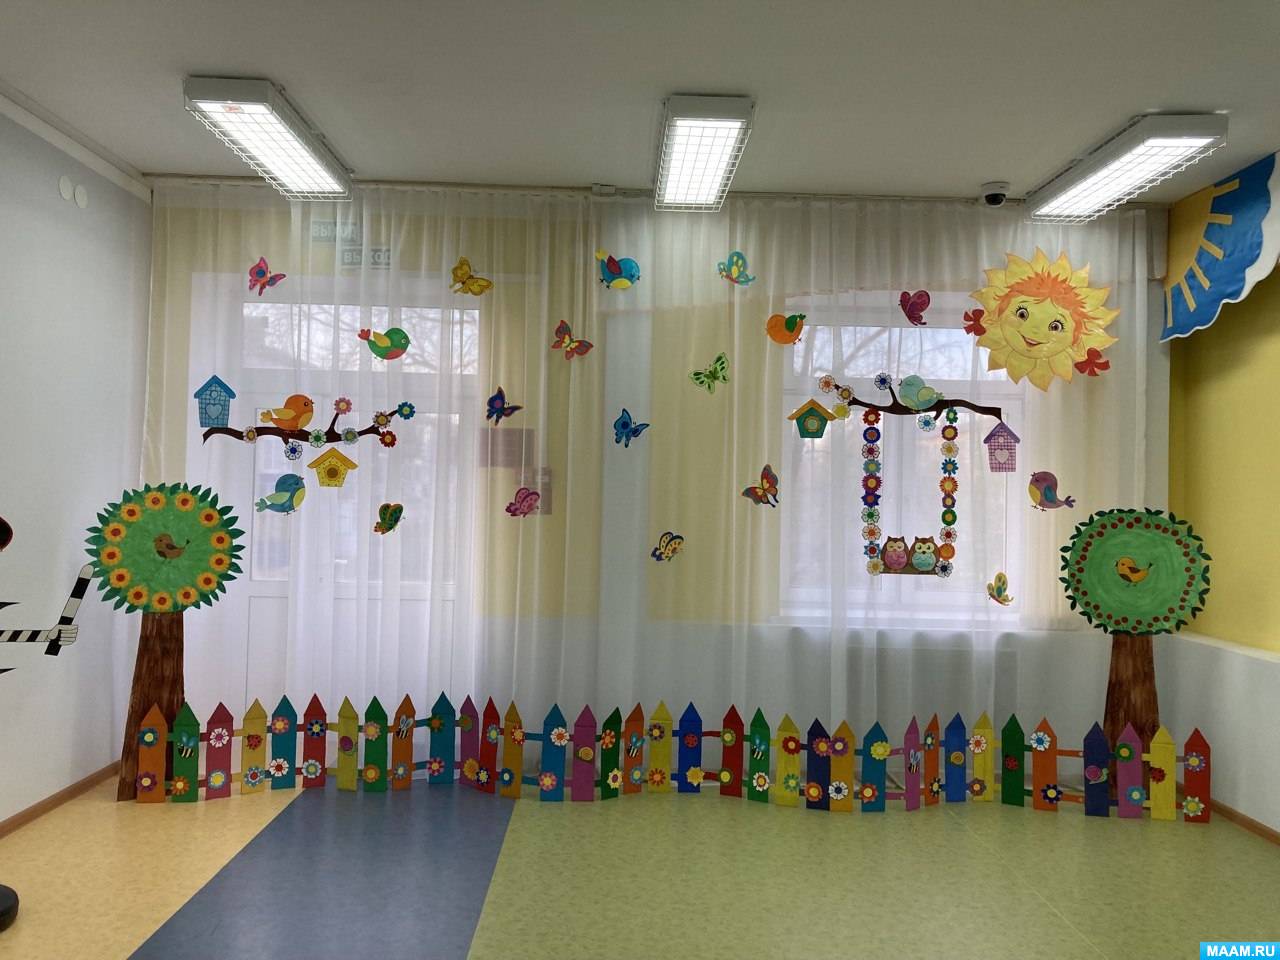 Красивое оформление детского сада | Декорирование, Школьные украшения, Декорации